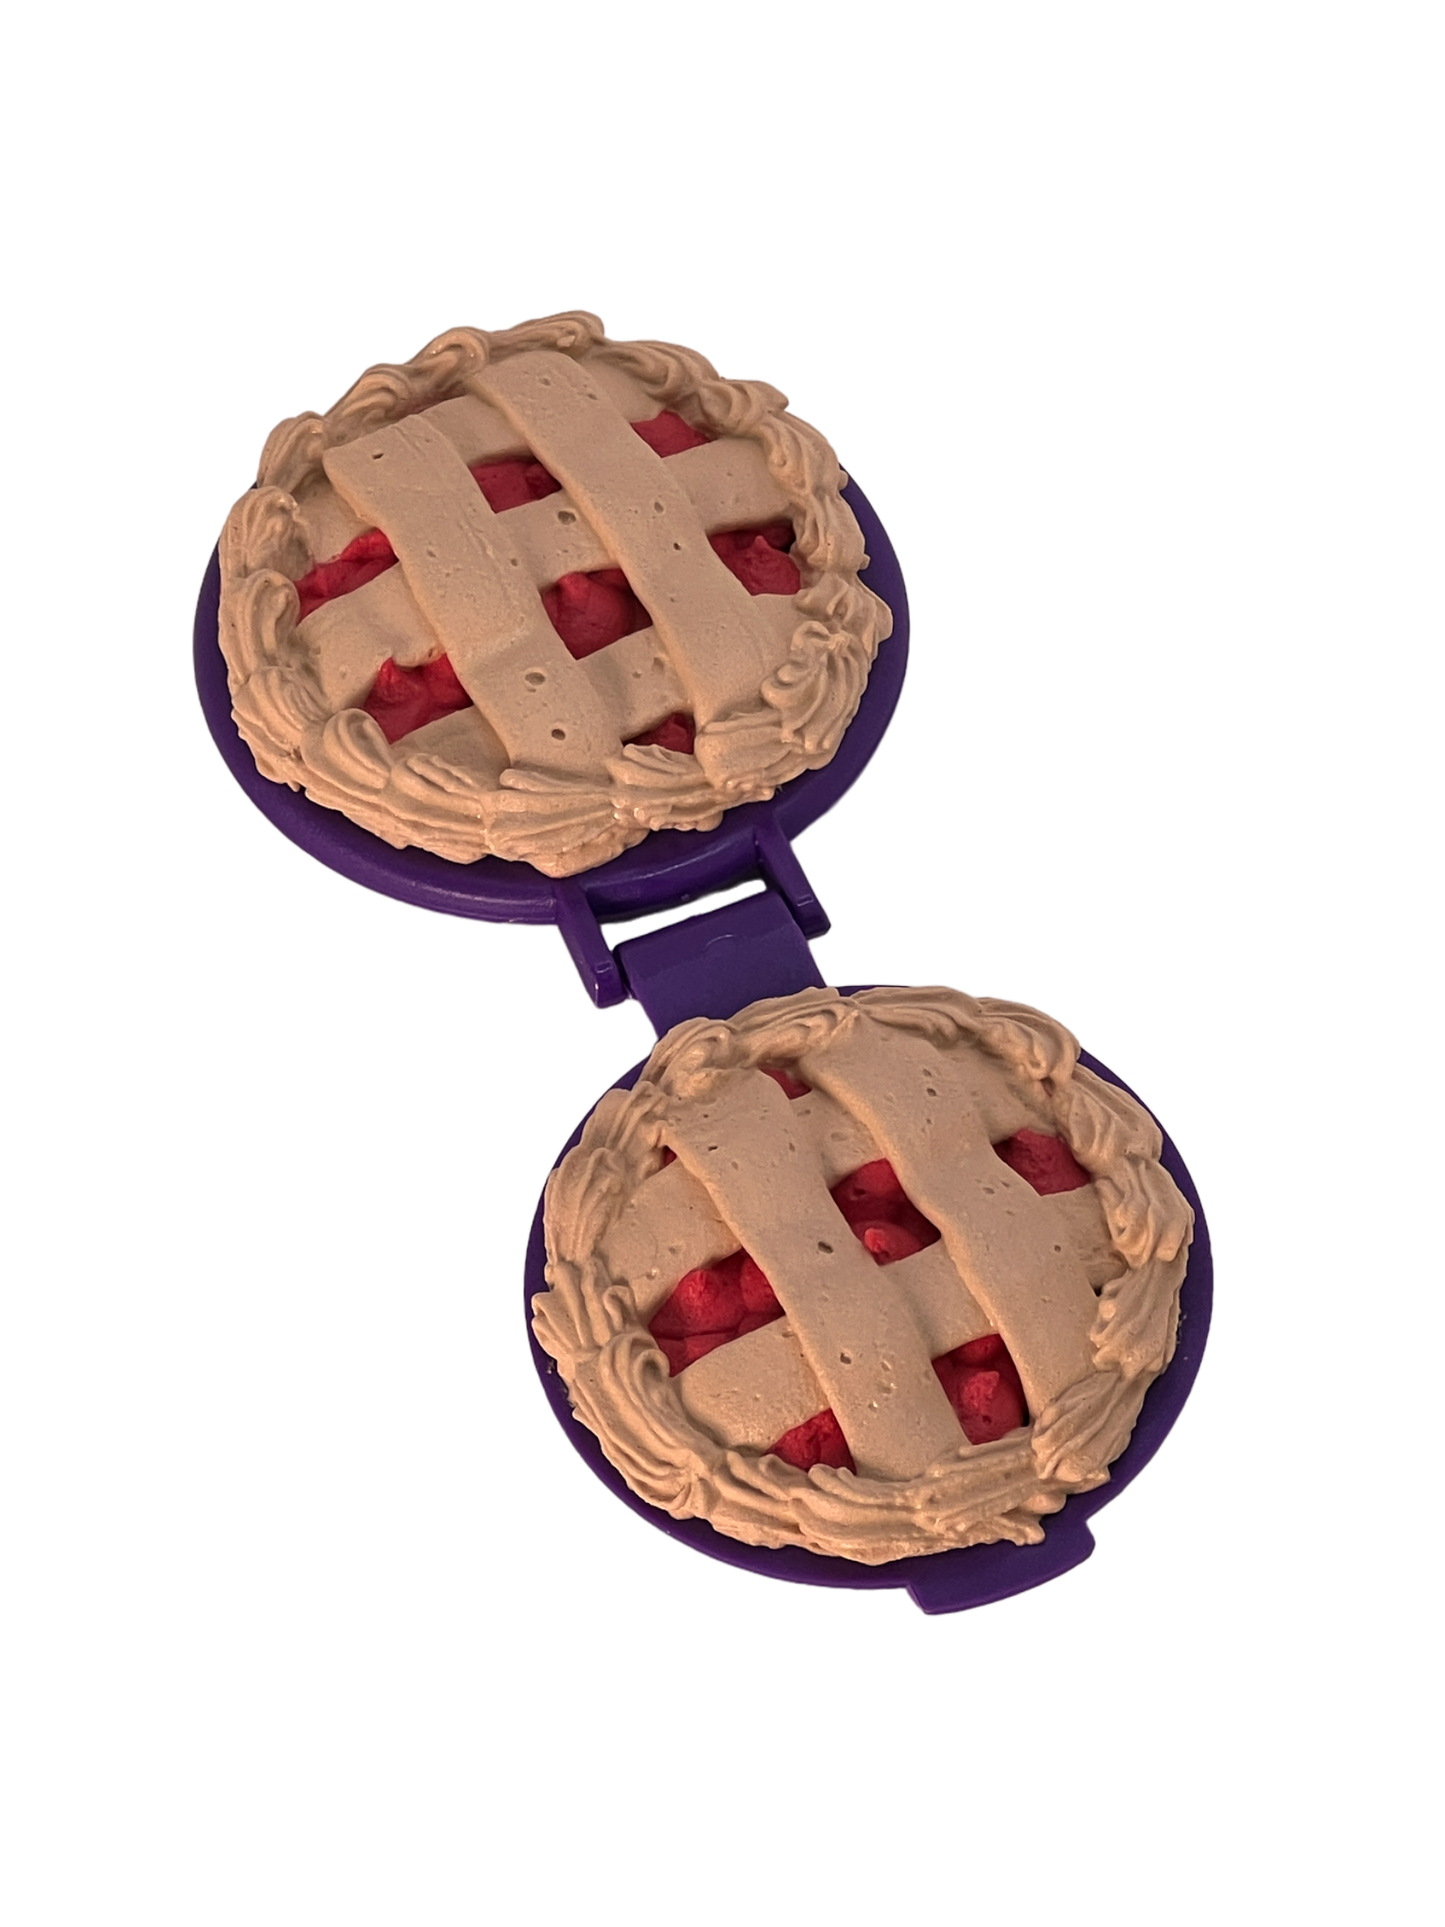 Cherry pie compact mirror dark purple